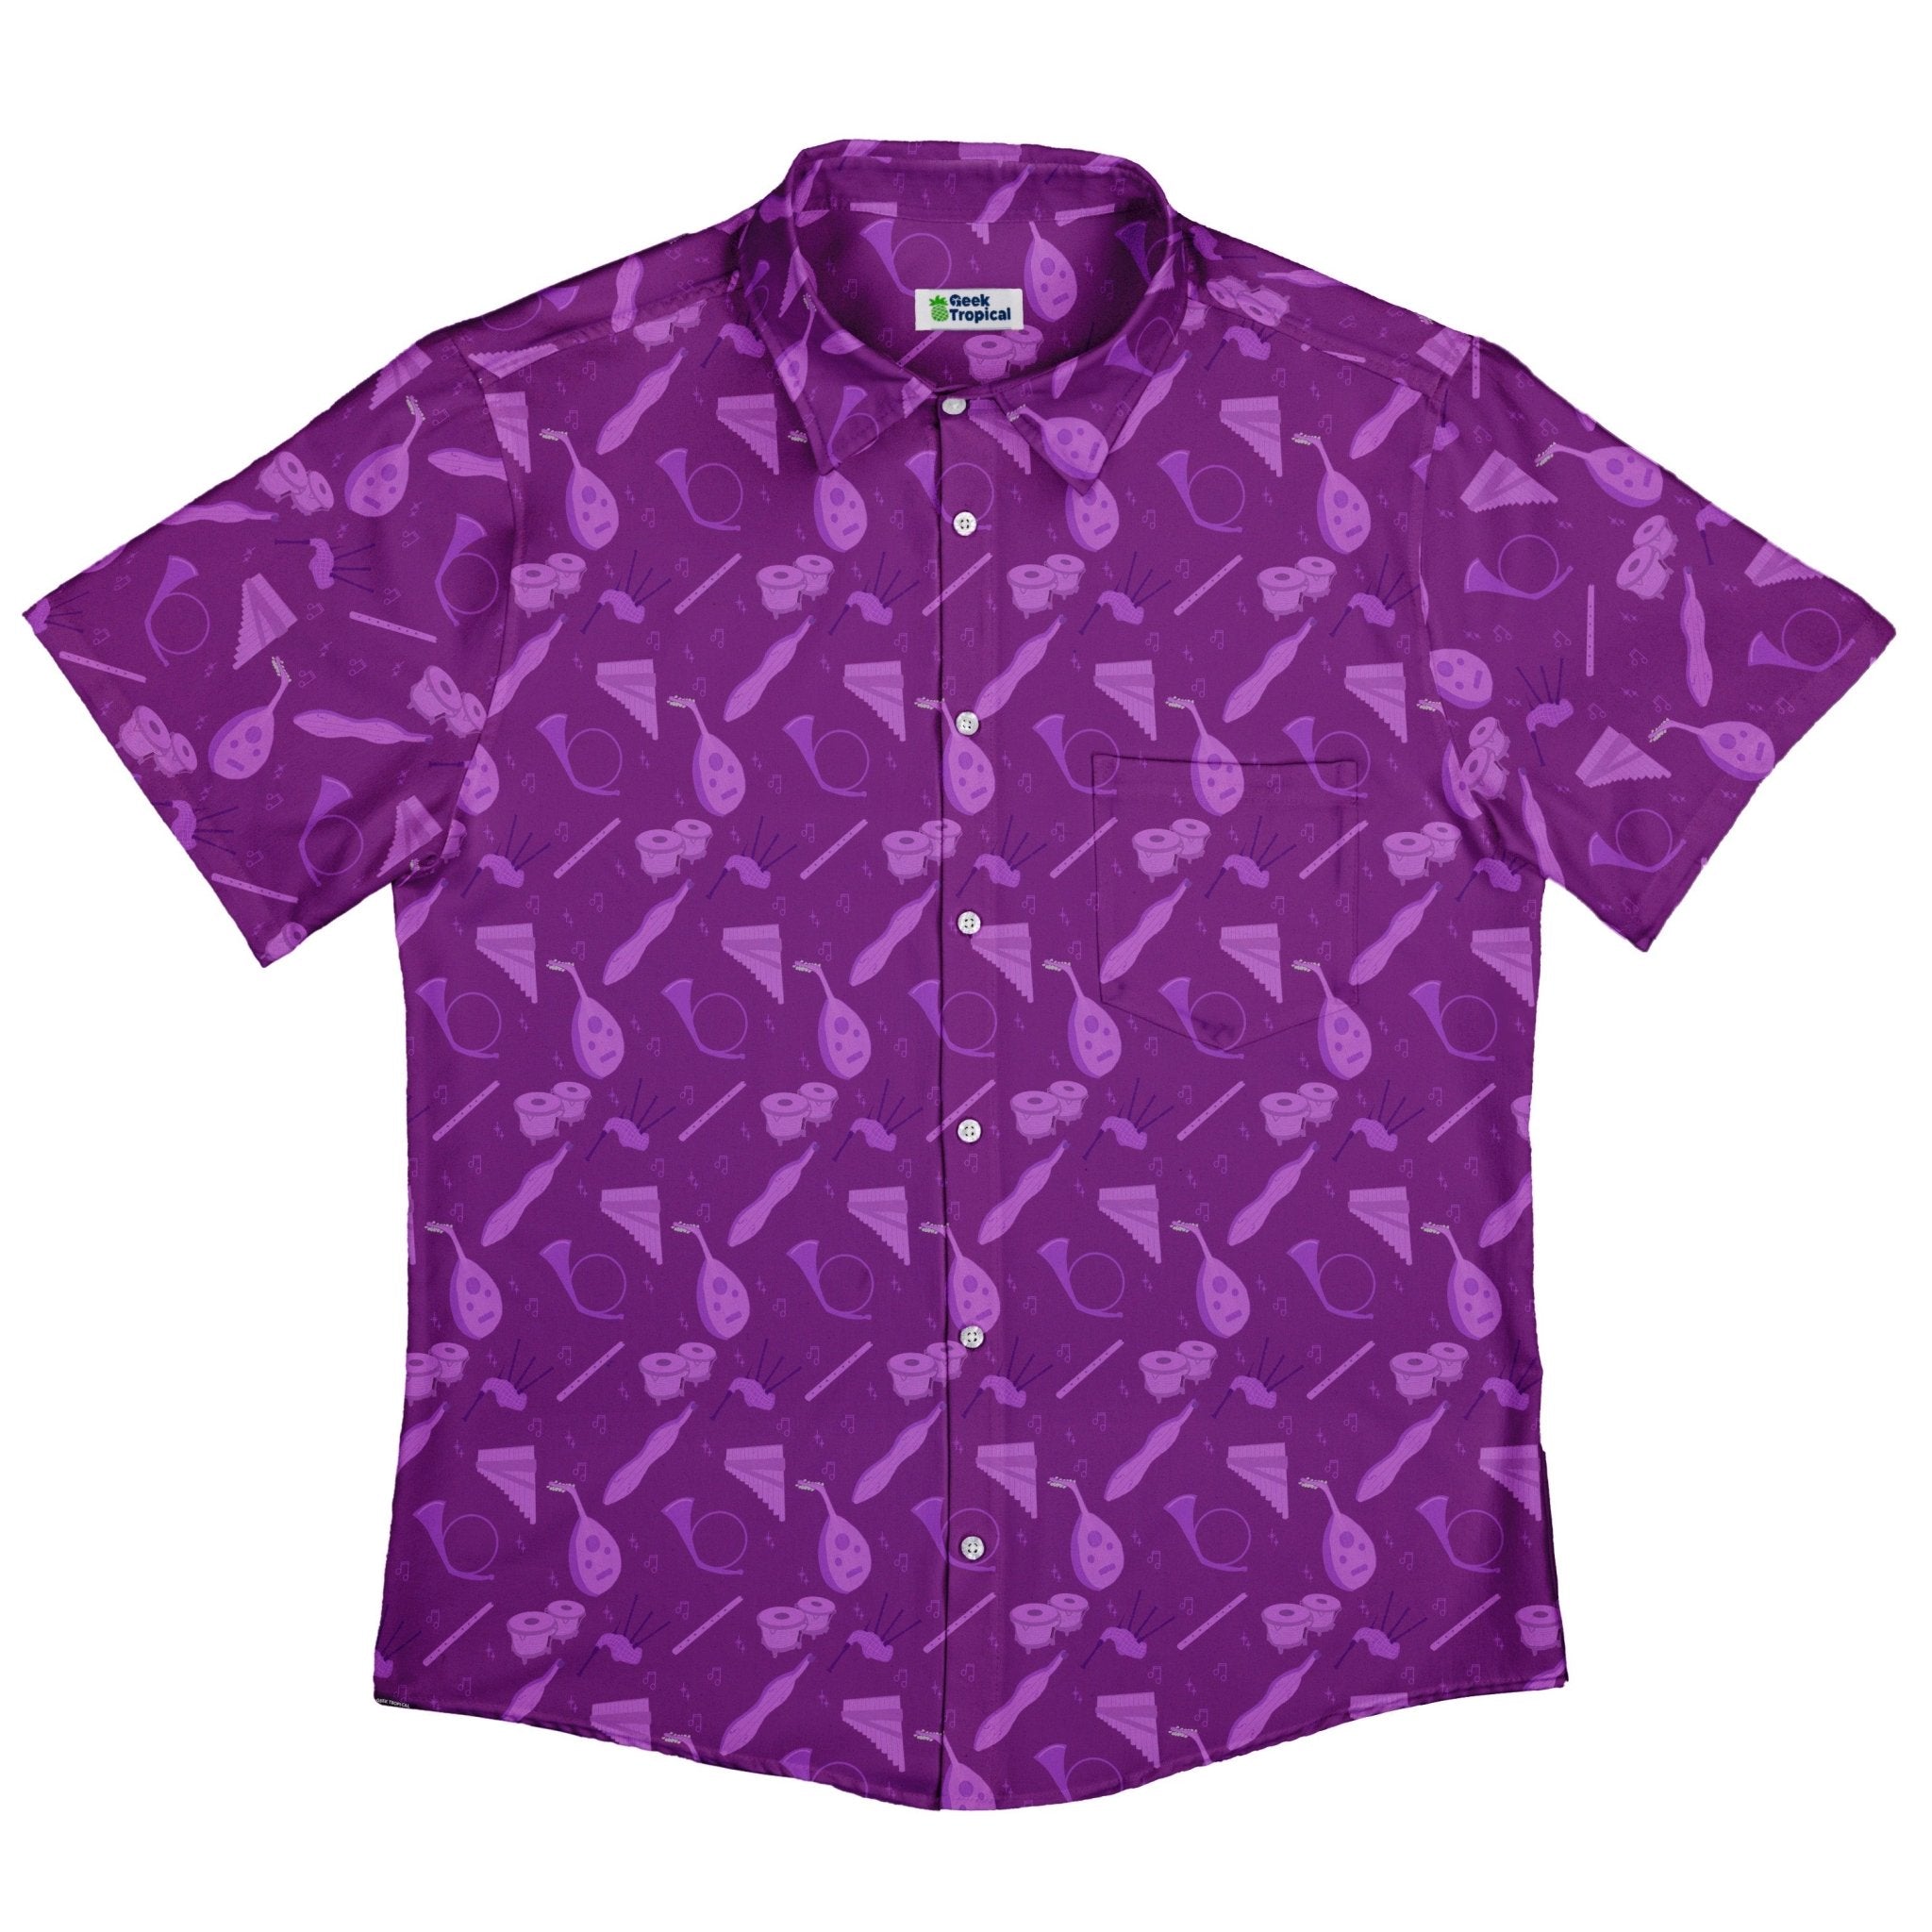 Dnd Bard Class Button Up Shirt - adult sizing - Design by Heather Davenport - dnd & rpg print